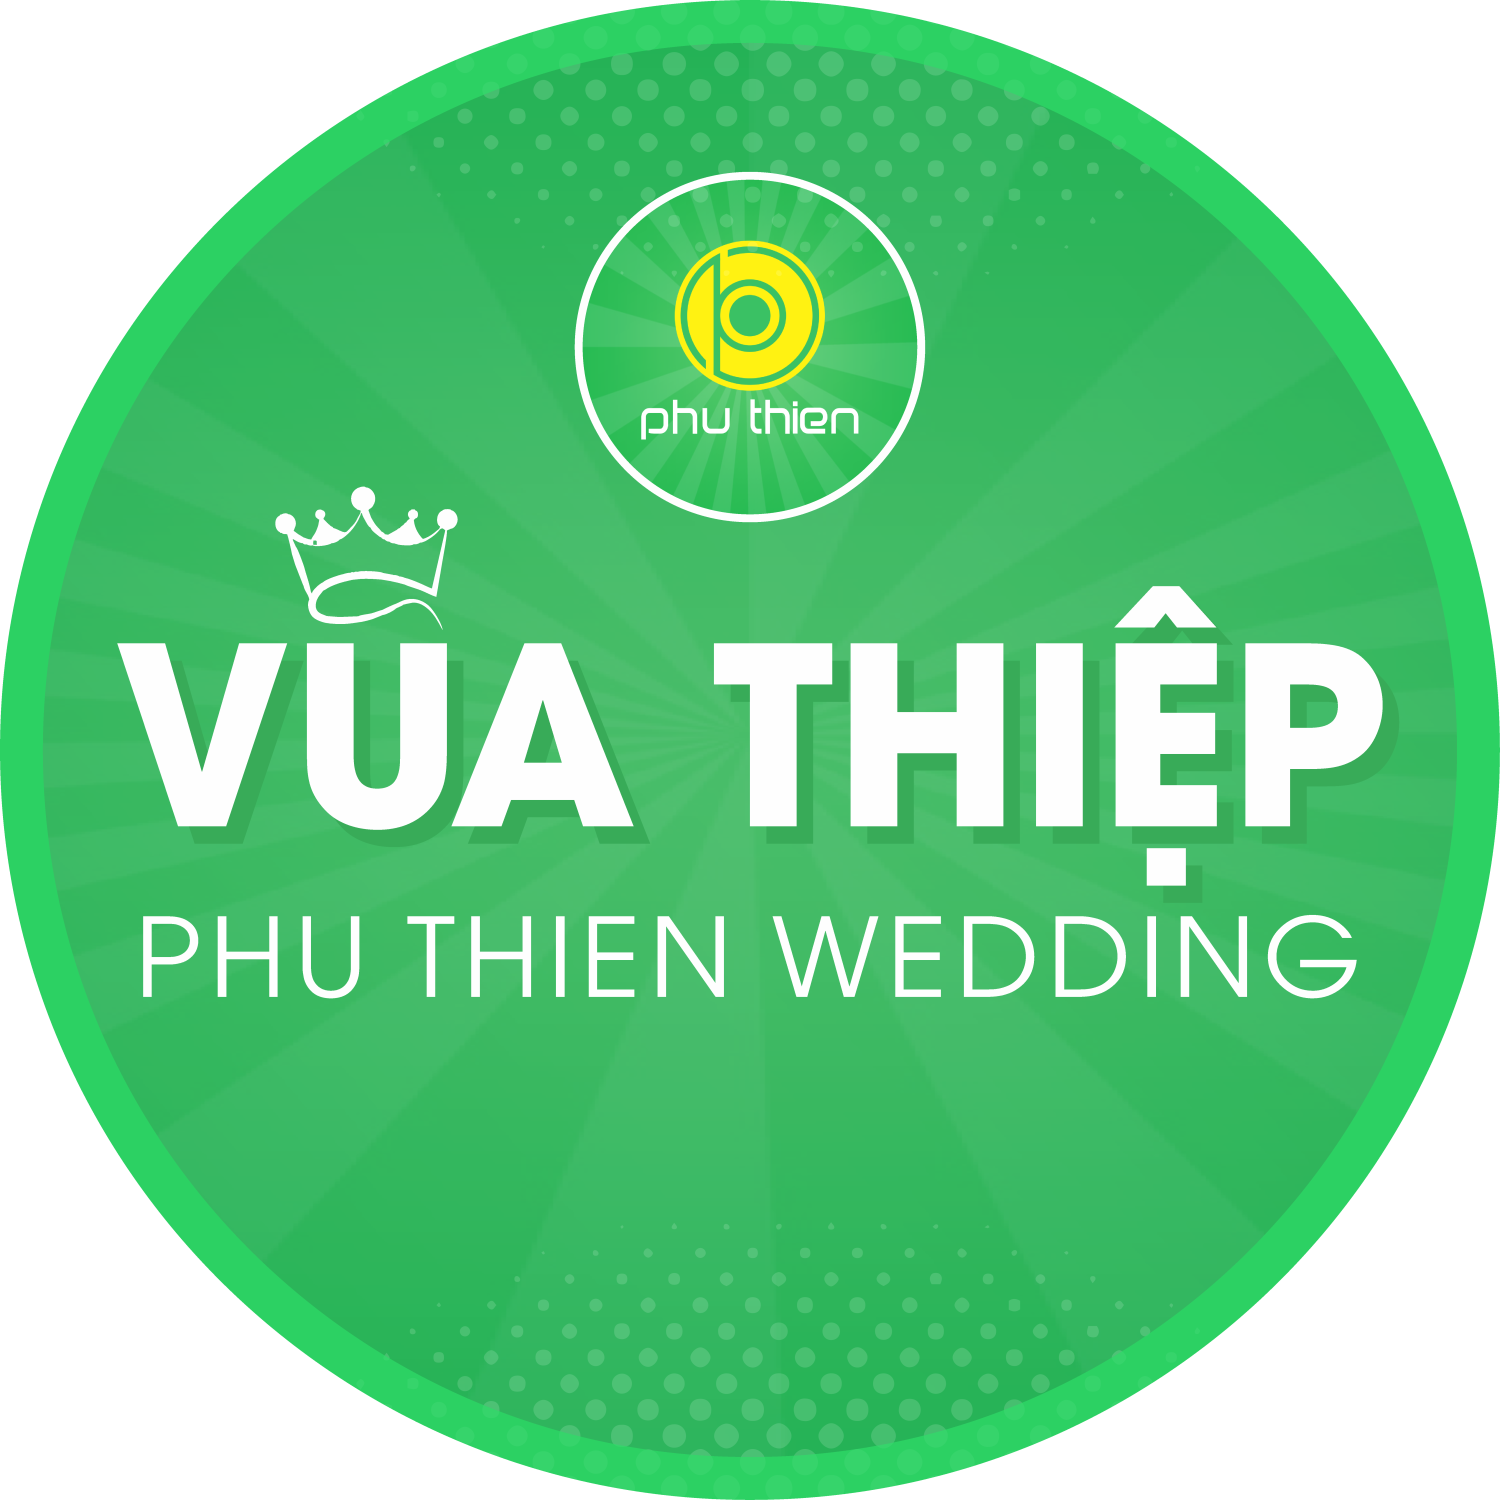 Vua Thiệp Cưới Nha Trang - Xưởng in TOP 1 tại Nha Trang, Khánh Hòa In thiệp cưới theo yêu cầu giá rẻ, in thiệp cưới đẹp tại Nha Trang